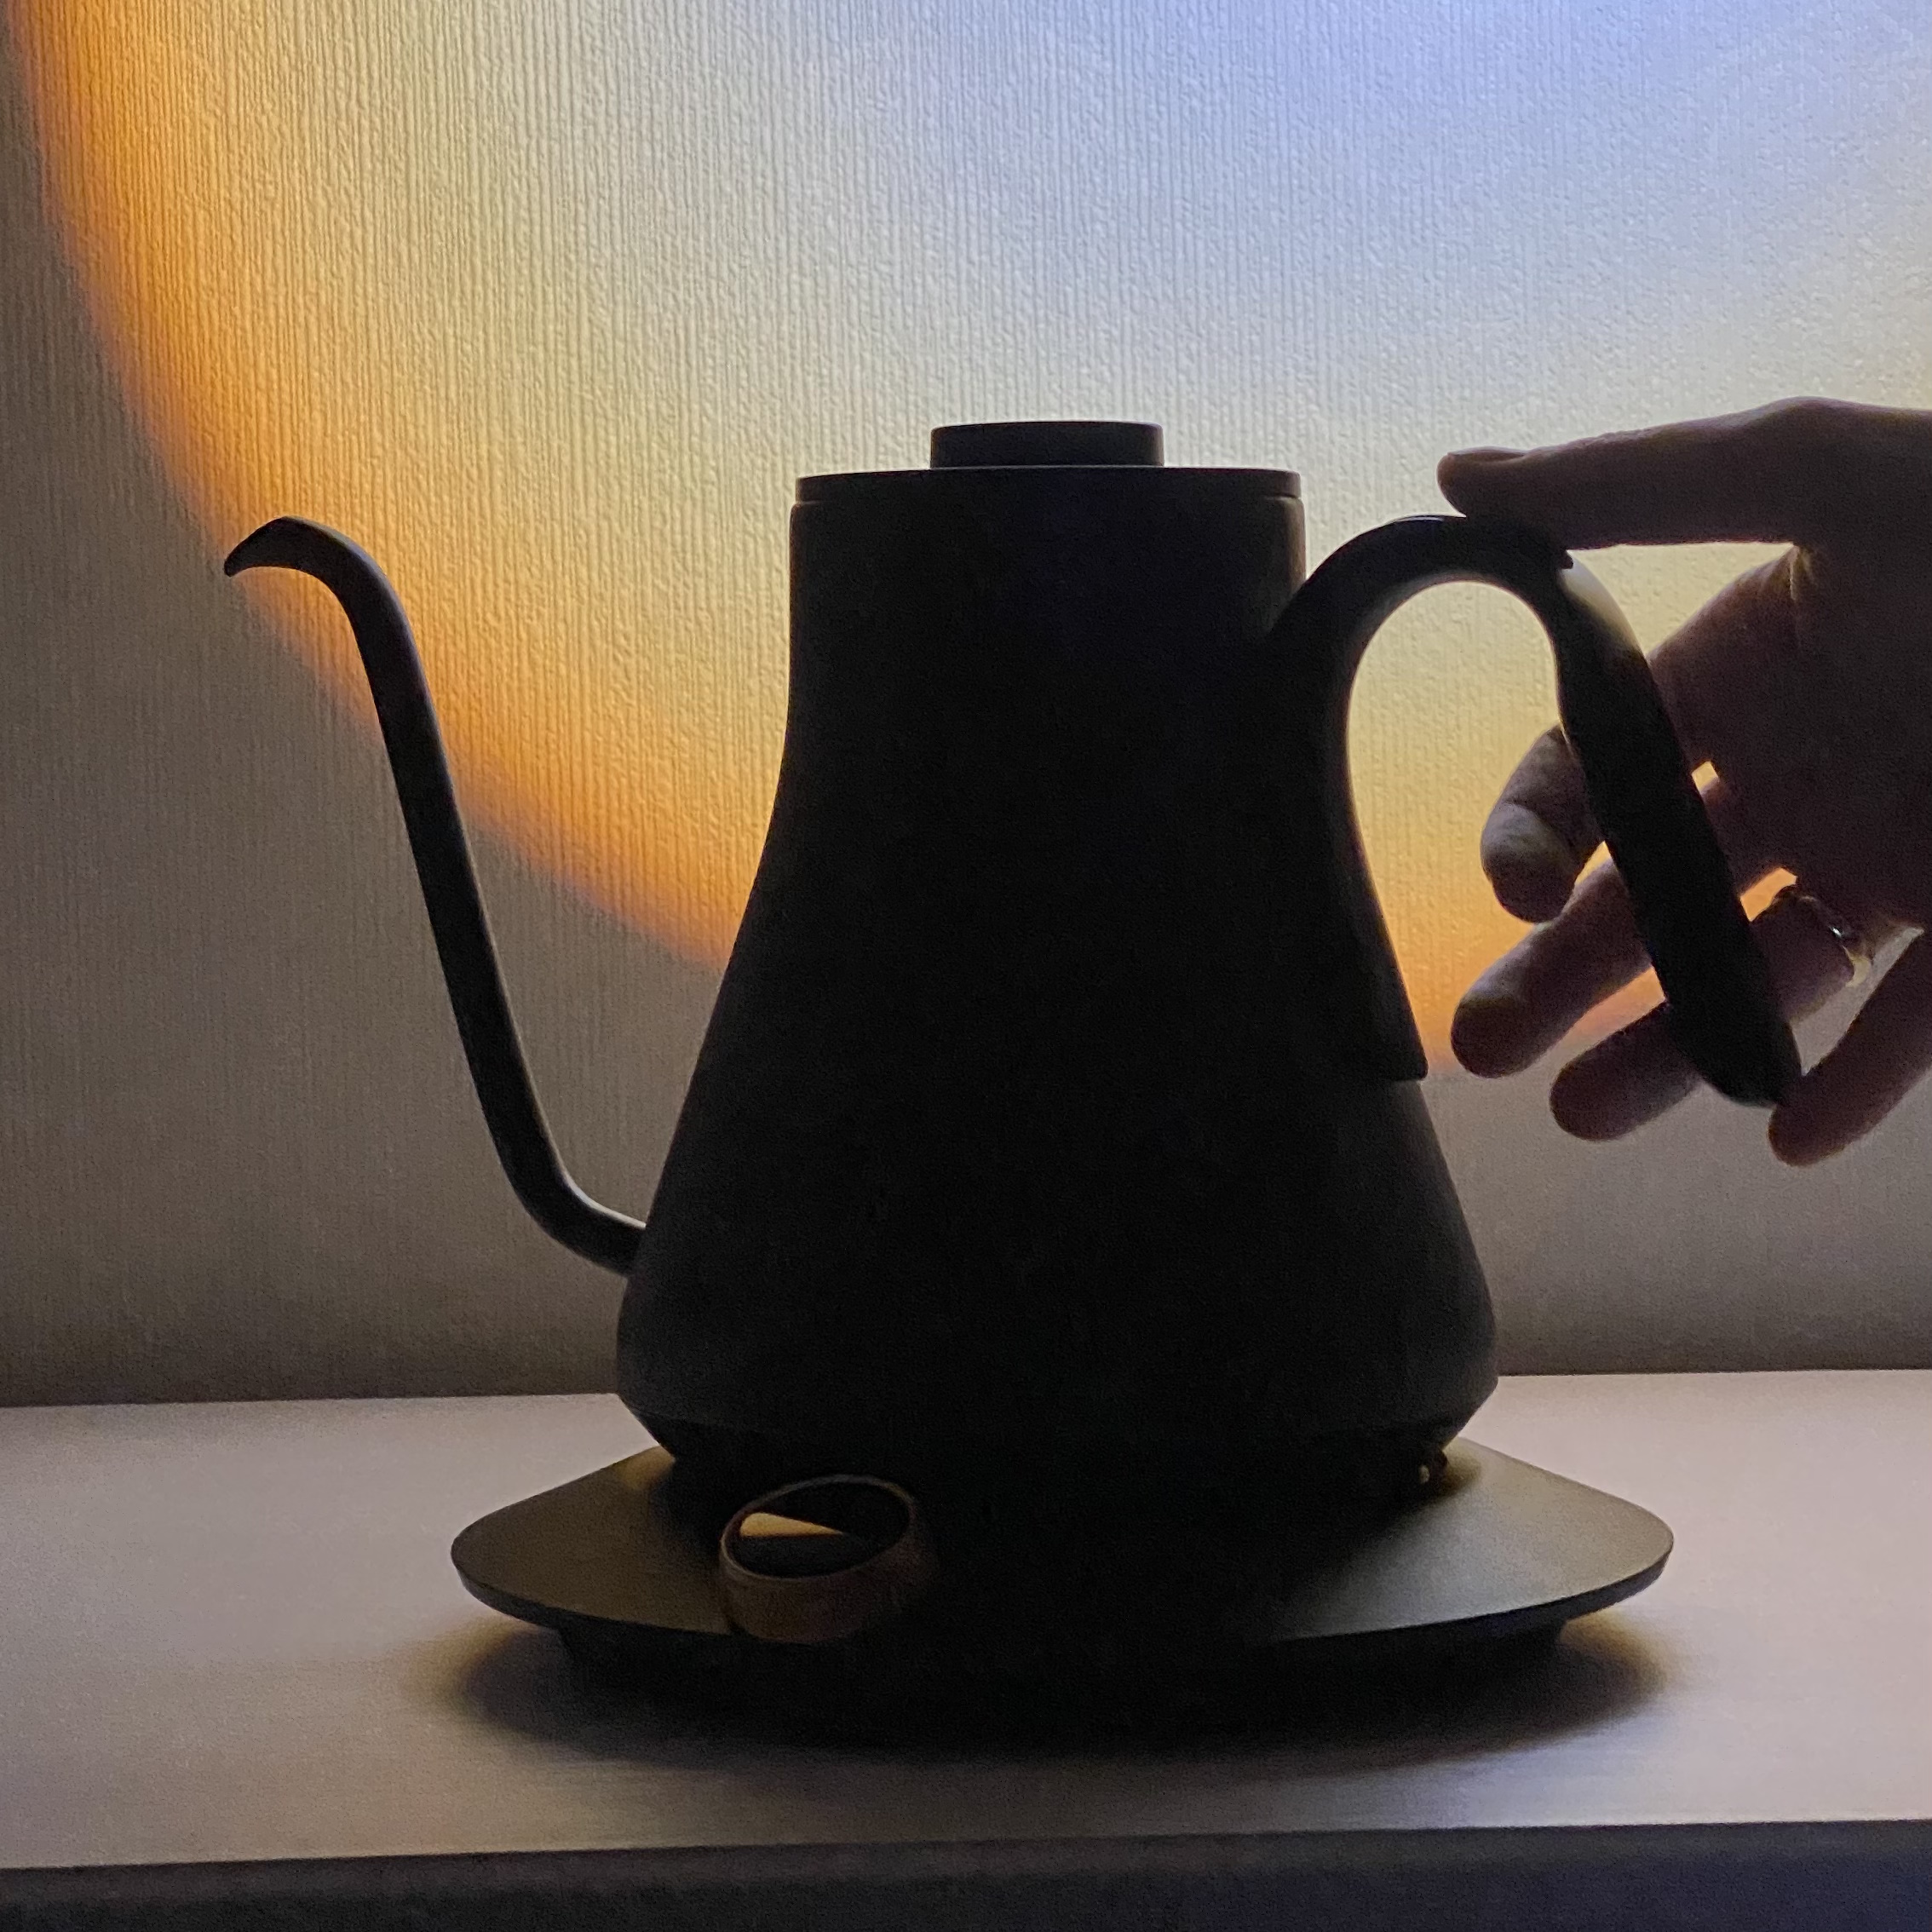 Как построить чайник. Какие цветом бывают чайники. Чундук чайник. Из каких материалов делают чайники. Из какого материала сделан чайник